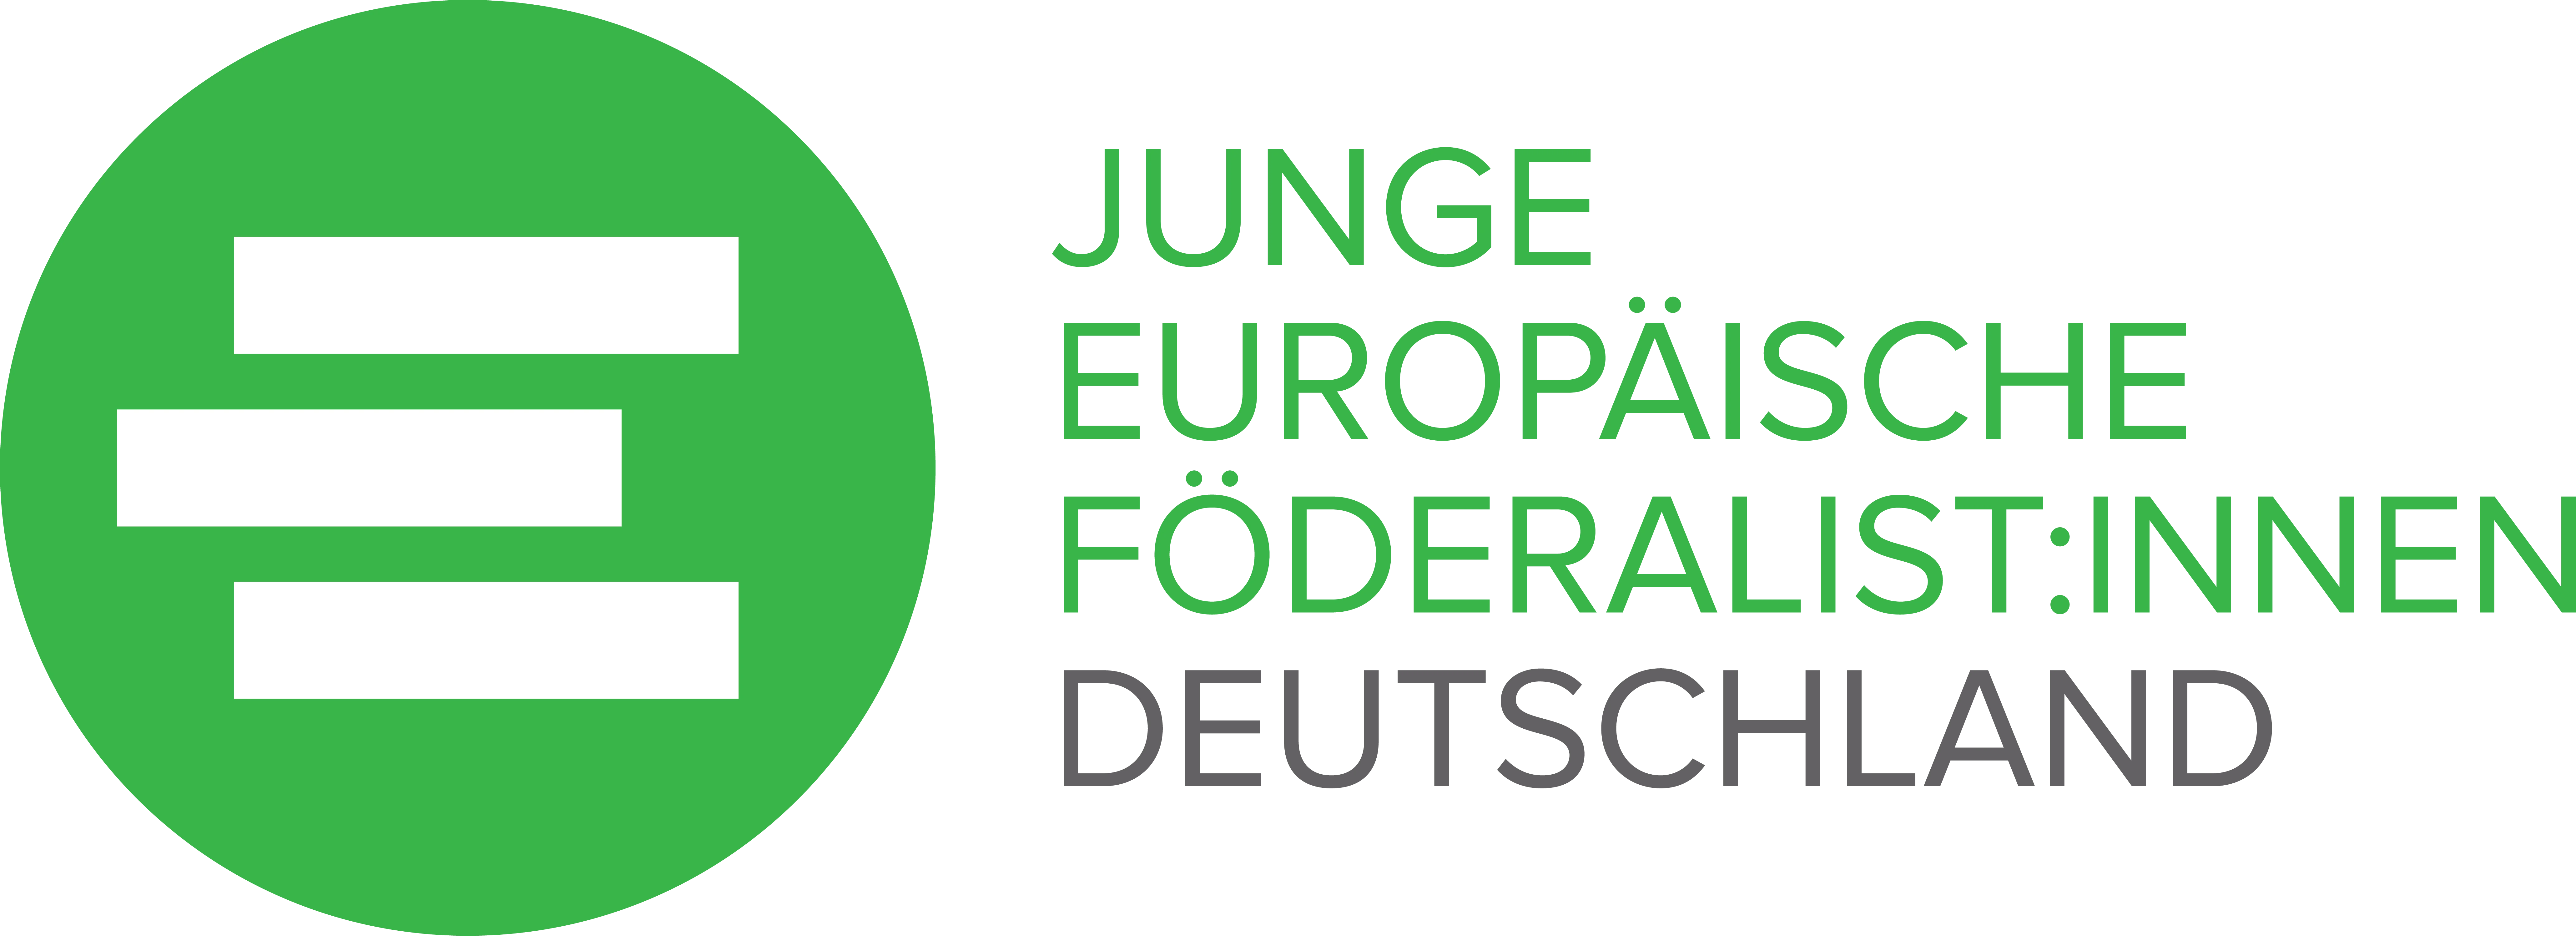 Logo Junge Europäische Föderalist:innen